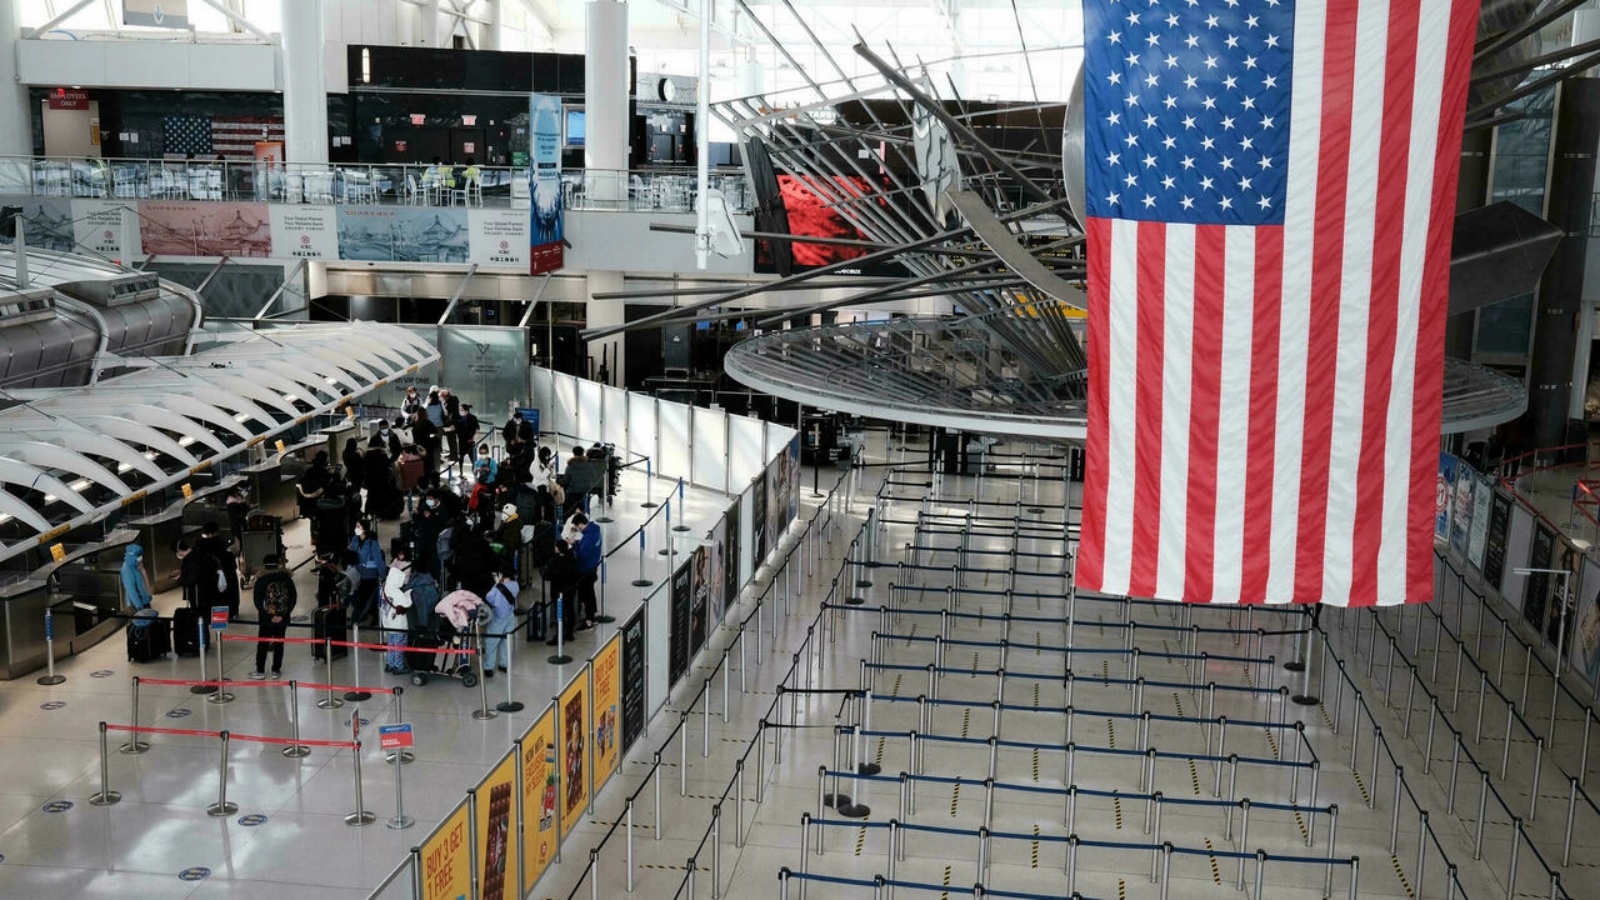 مسافرون في أحد مطارات الولايات المتحدة خلال أزمة كورونا كوفيد-19. (أرشيفية)